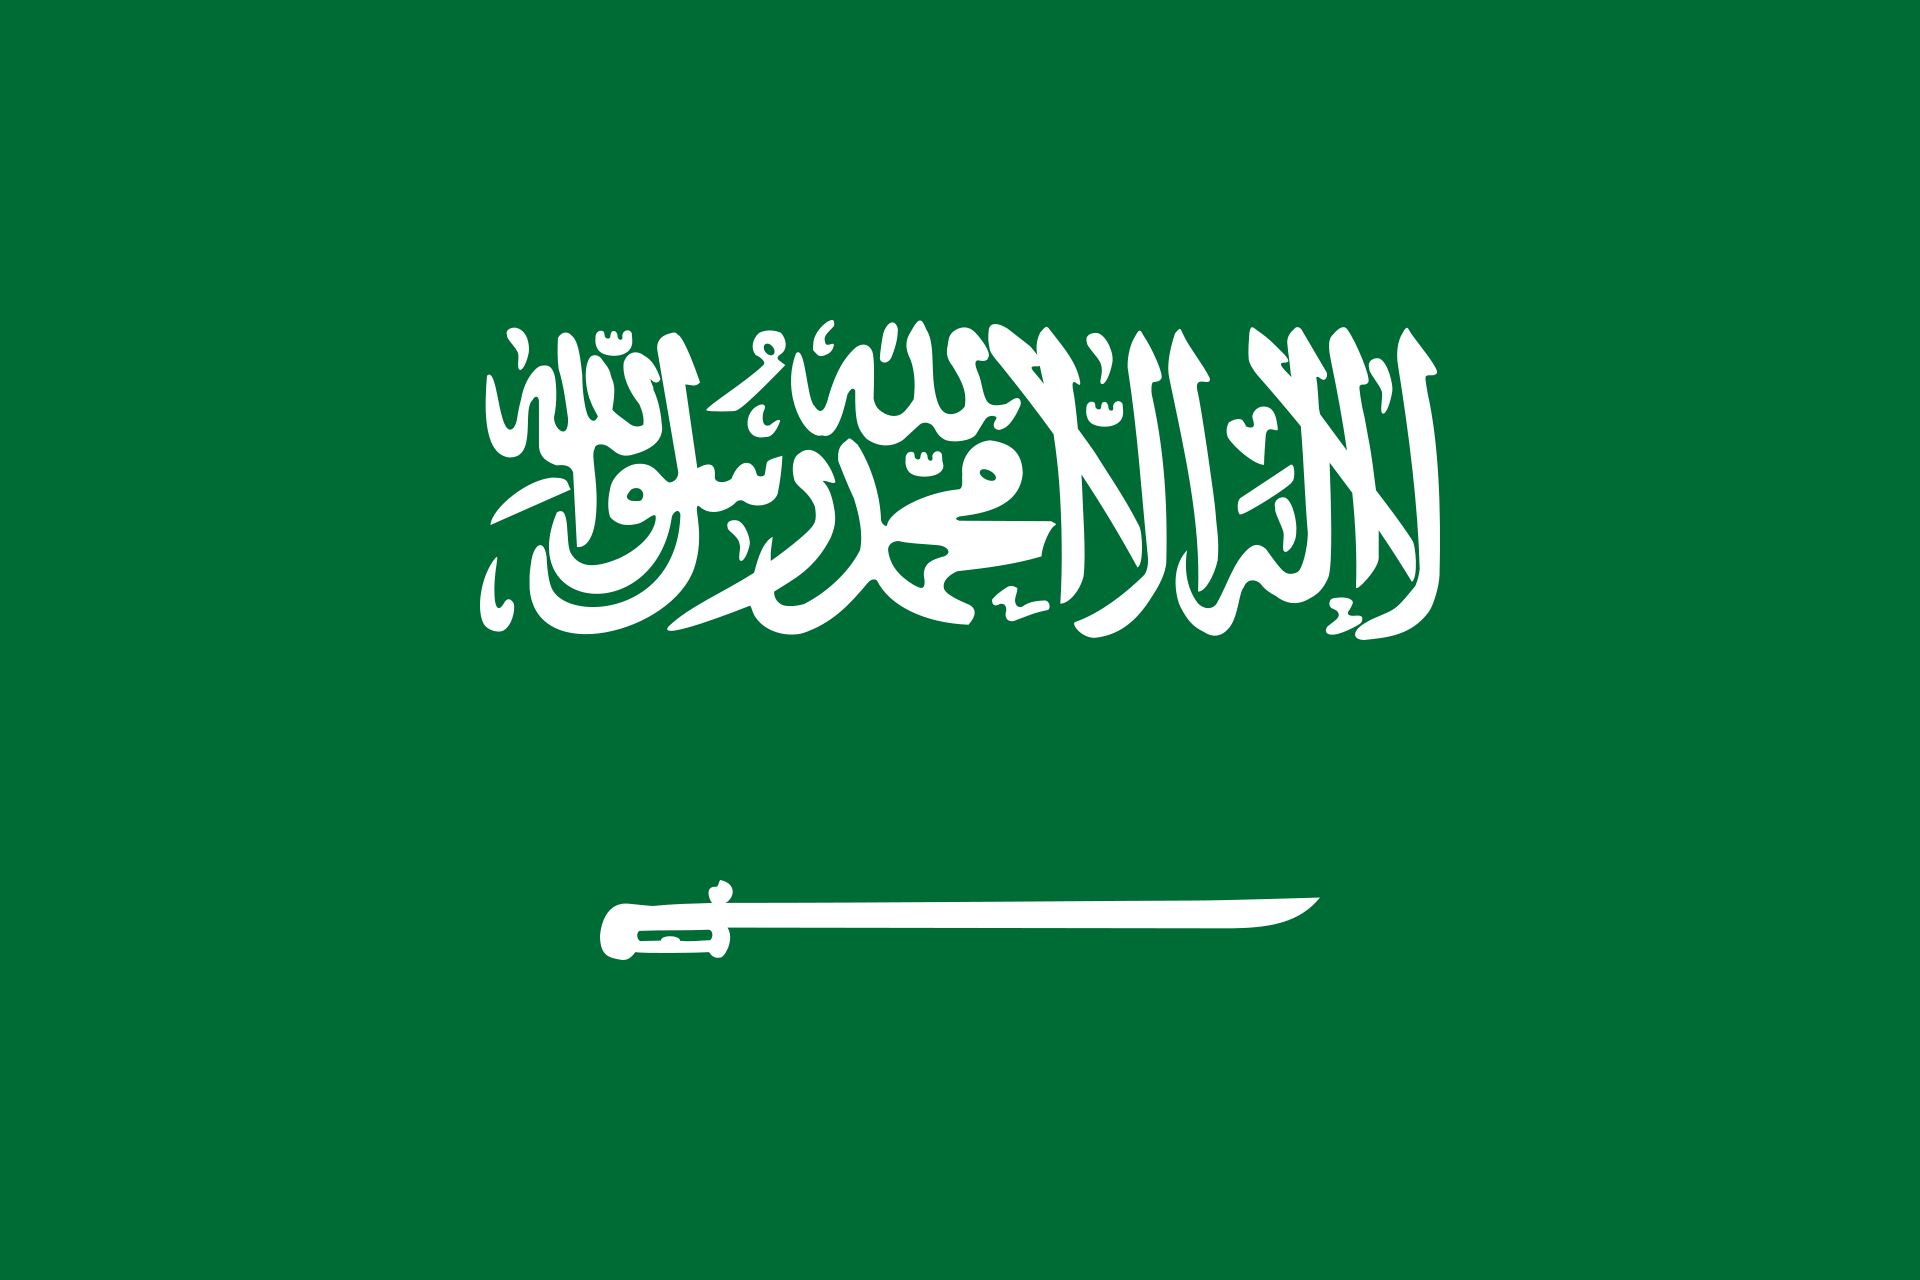 Kerajaan Arab Saudi Tunjuk Menteri Baru Urusan Kesehatan, Haji dan Umrah